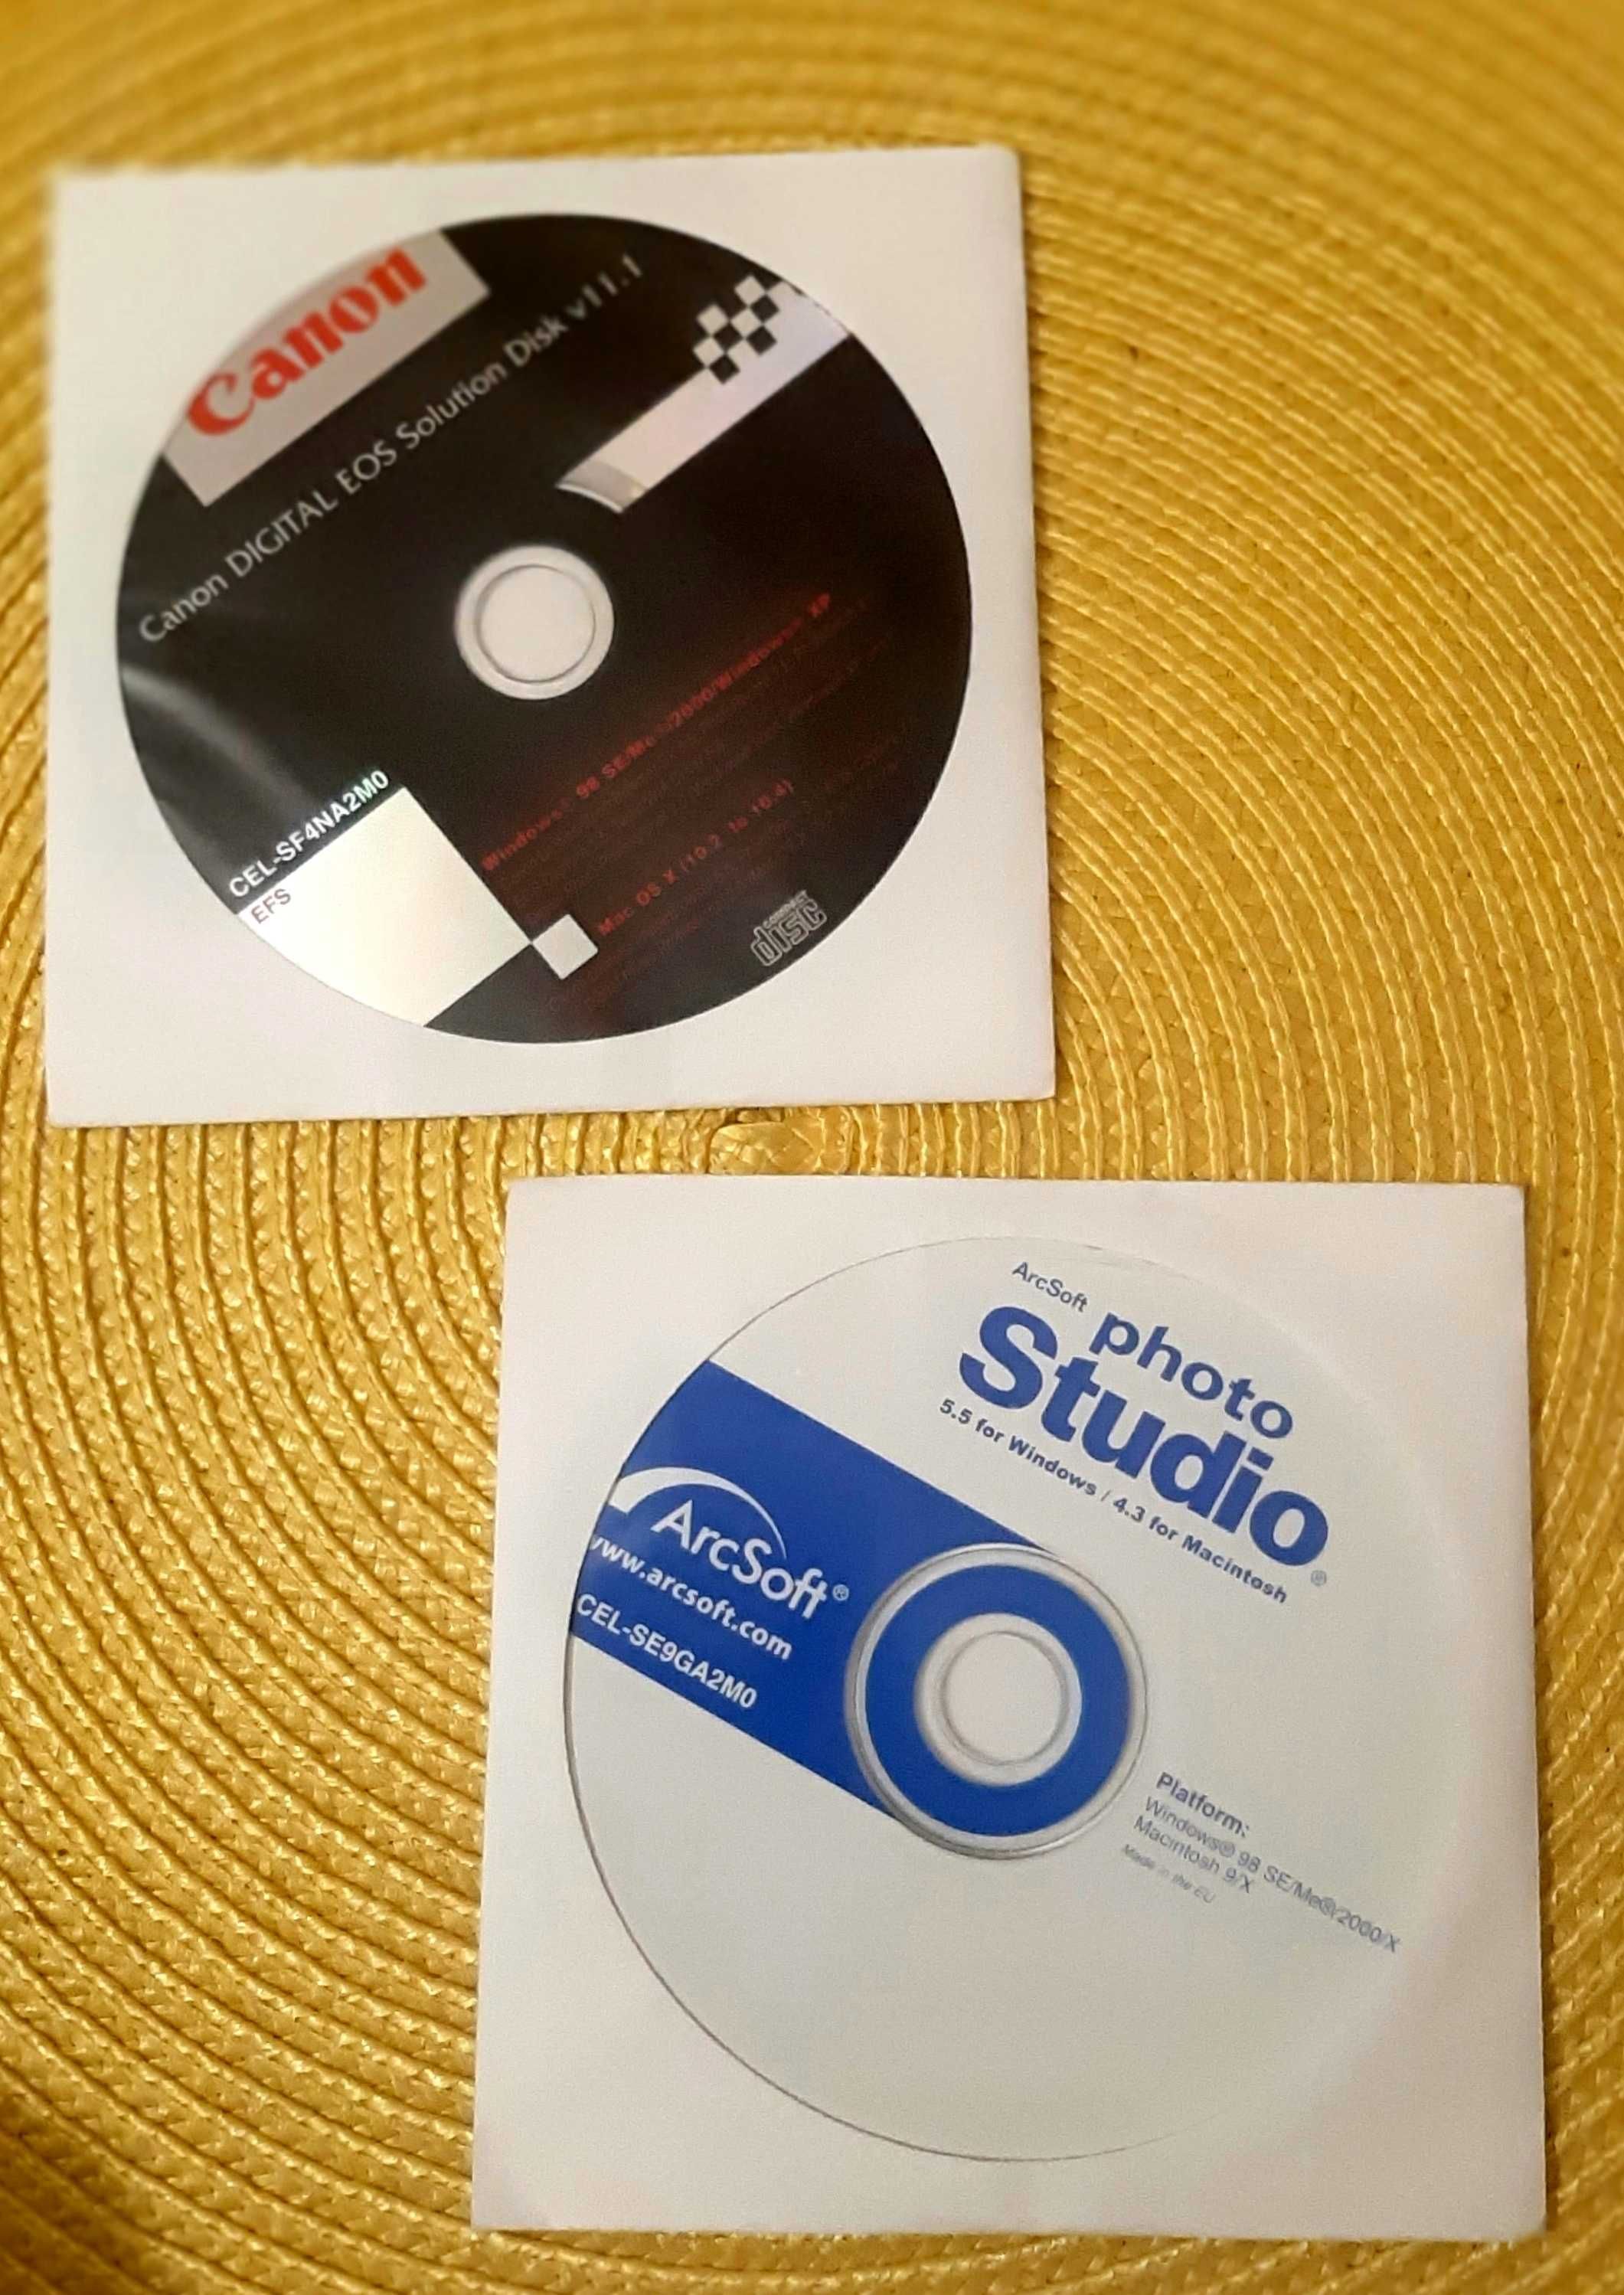 CANON.компакт-диск с инструкциями;диск с програмным обеспечением.